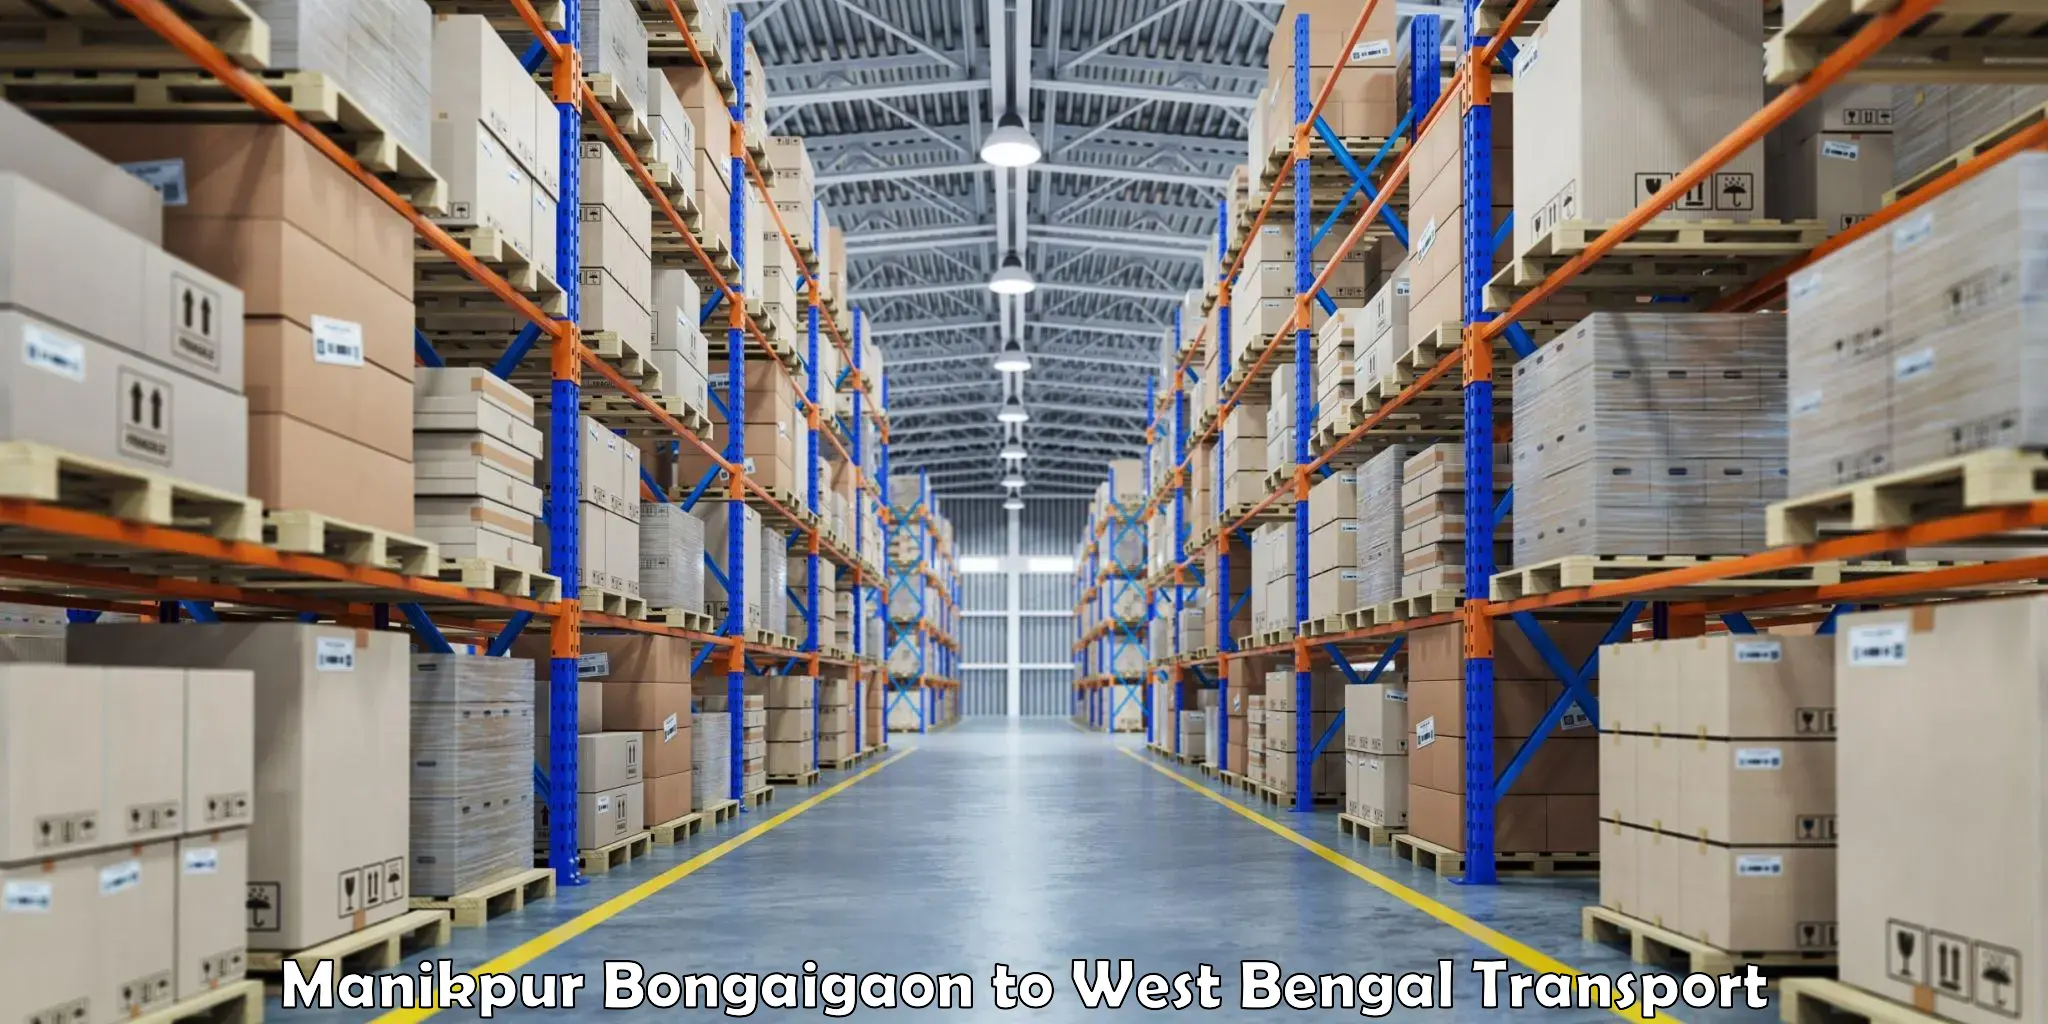 Furniture transport service Manikpur Bongaigaon to Manglamaro